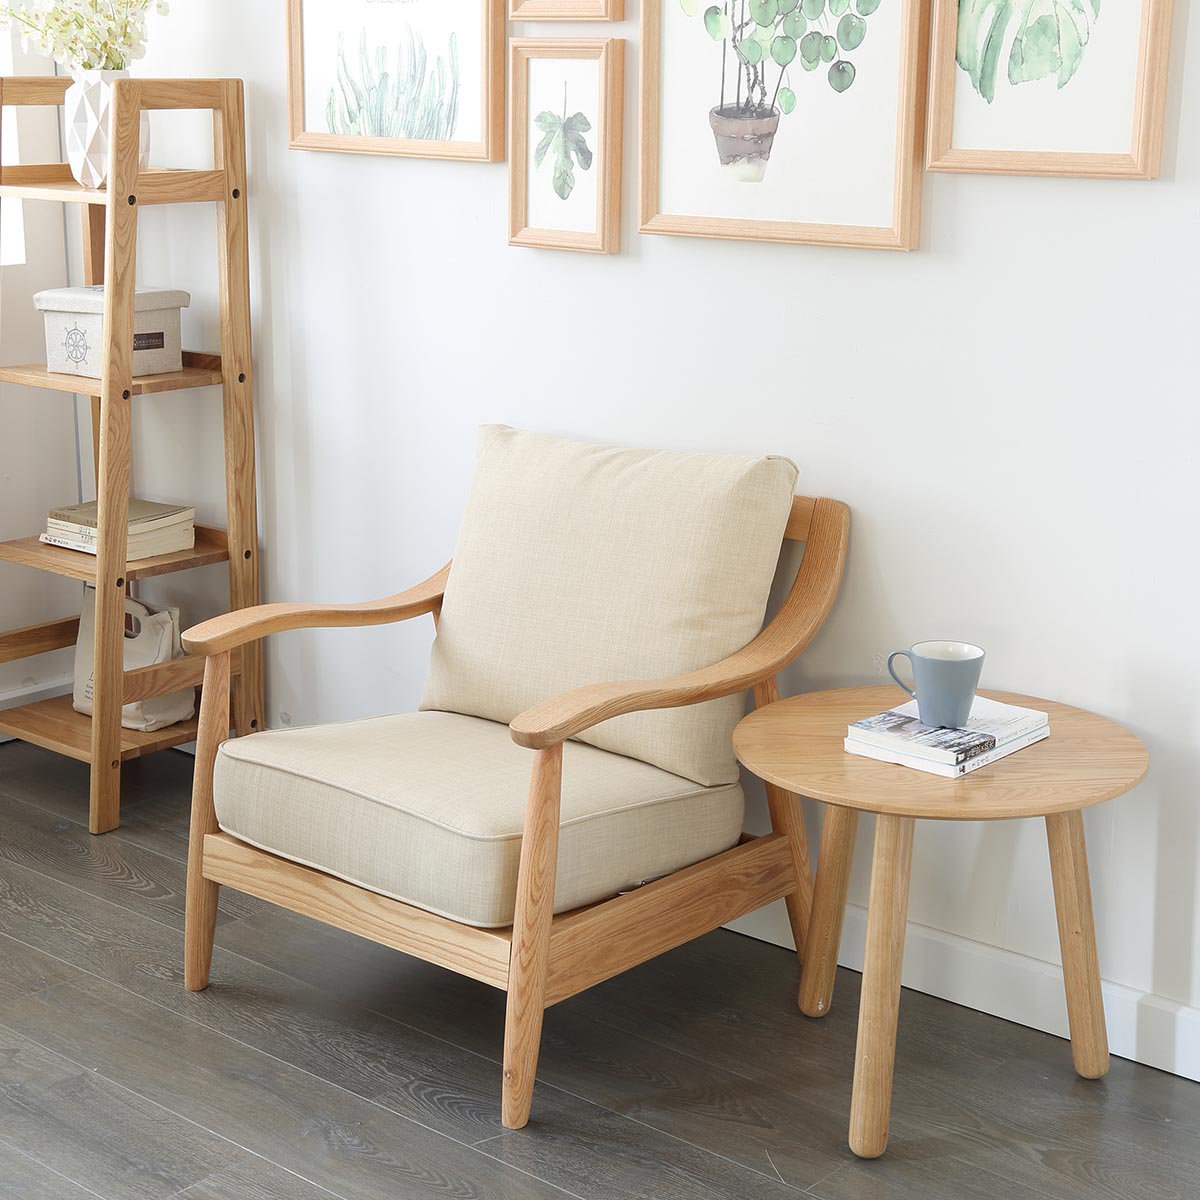 北欧日式简约现代实木沙发布艺沙发原木色橡木三人客厅家具套装组合 s